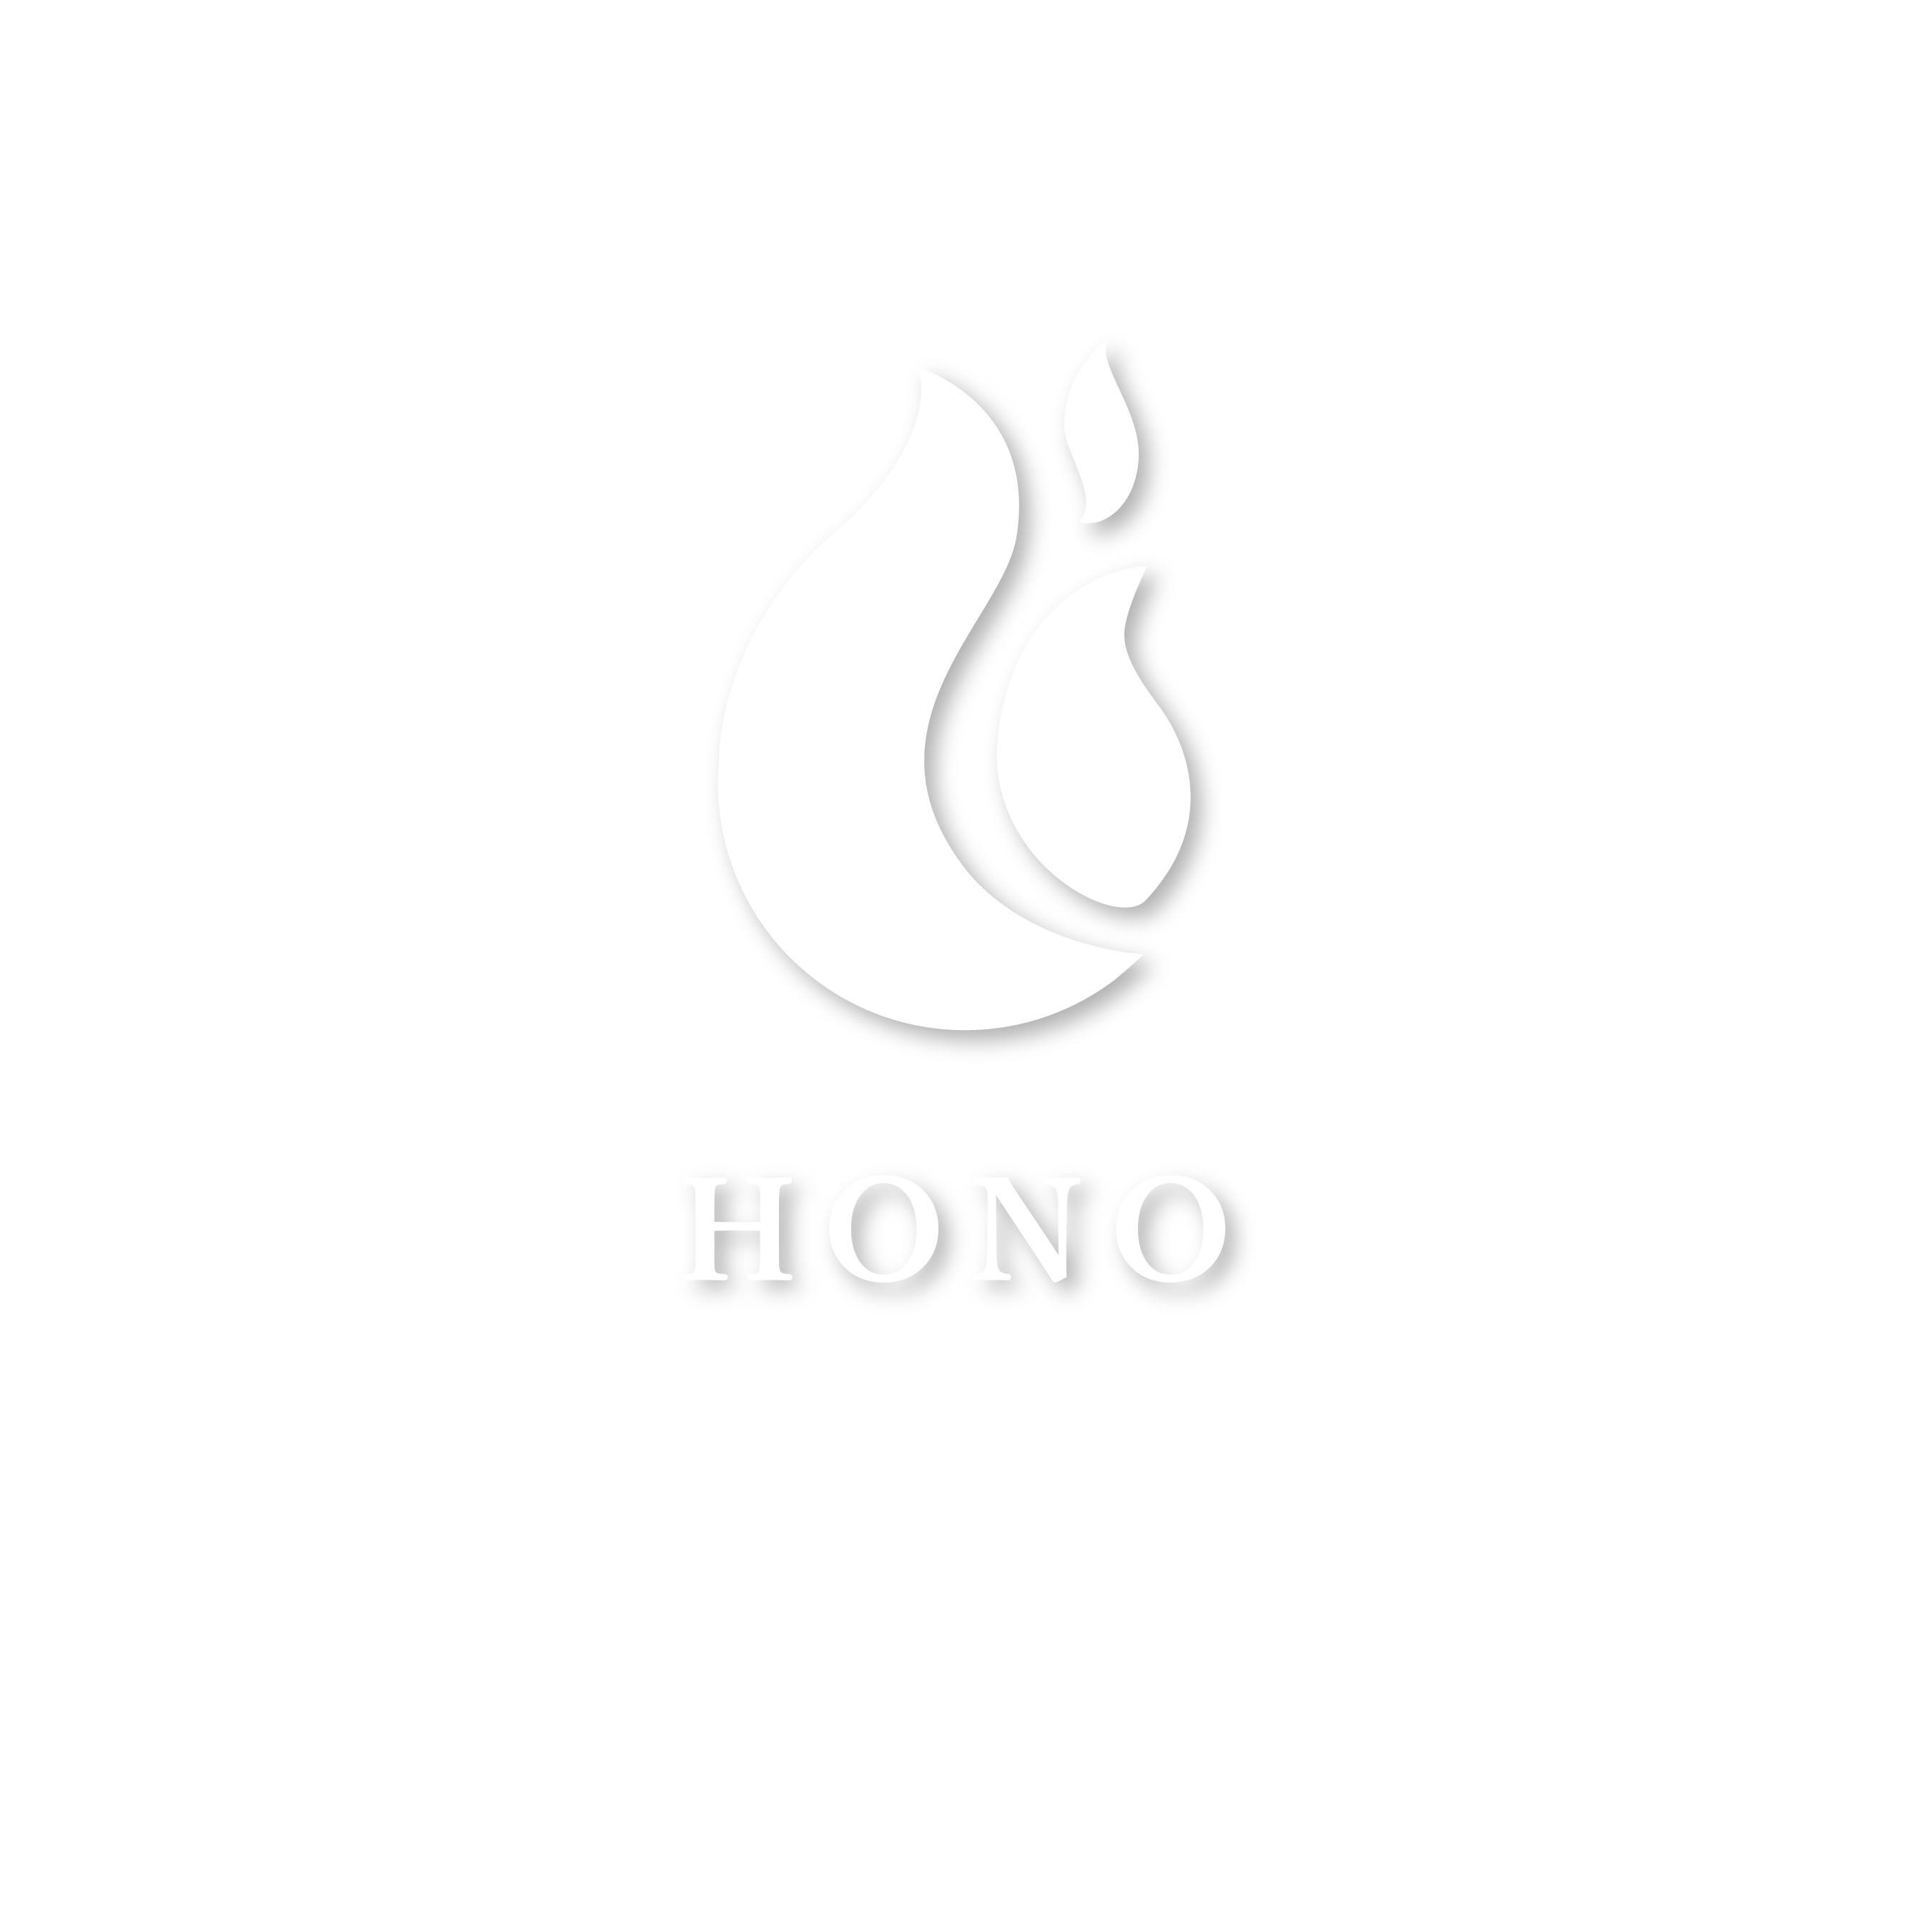 关于 HONO 餐厅的更多信息